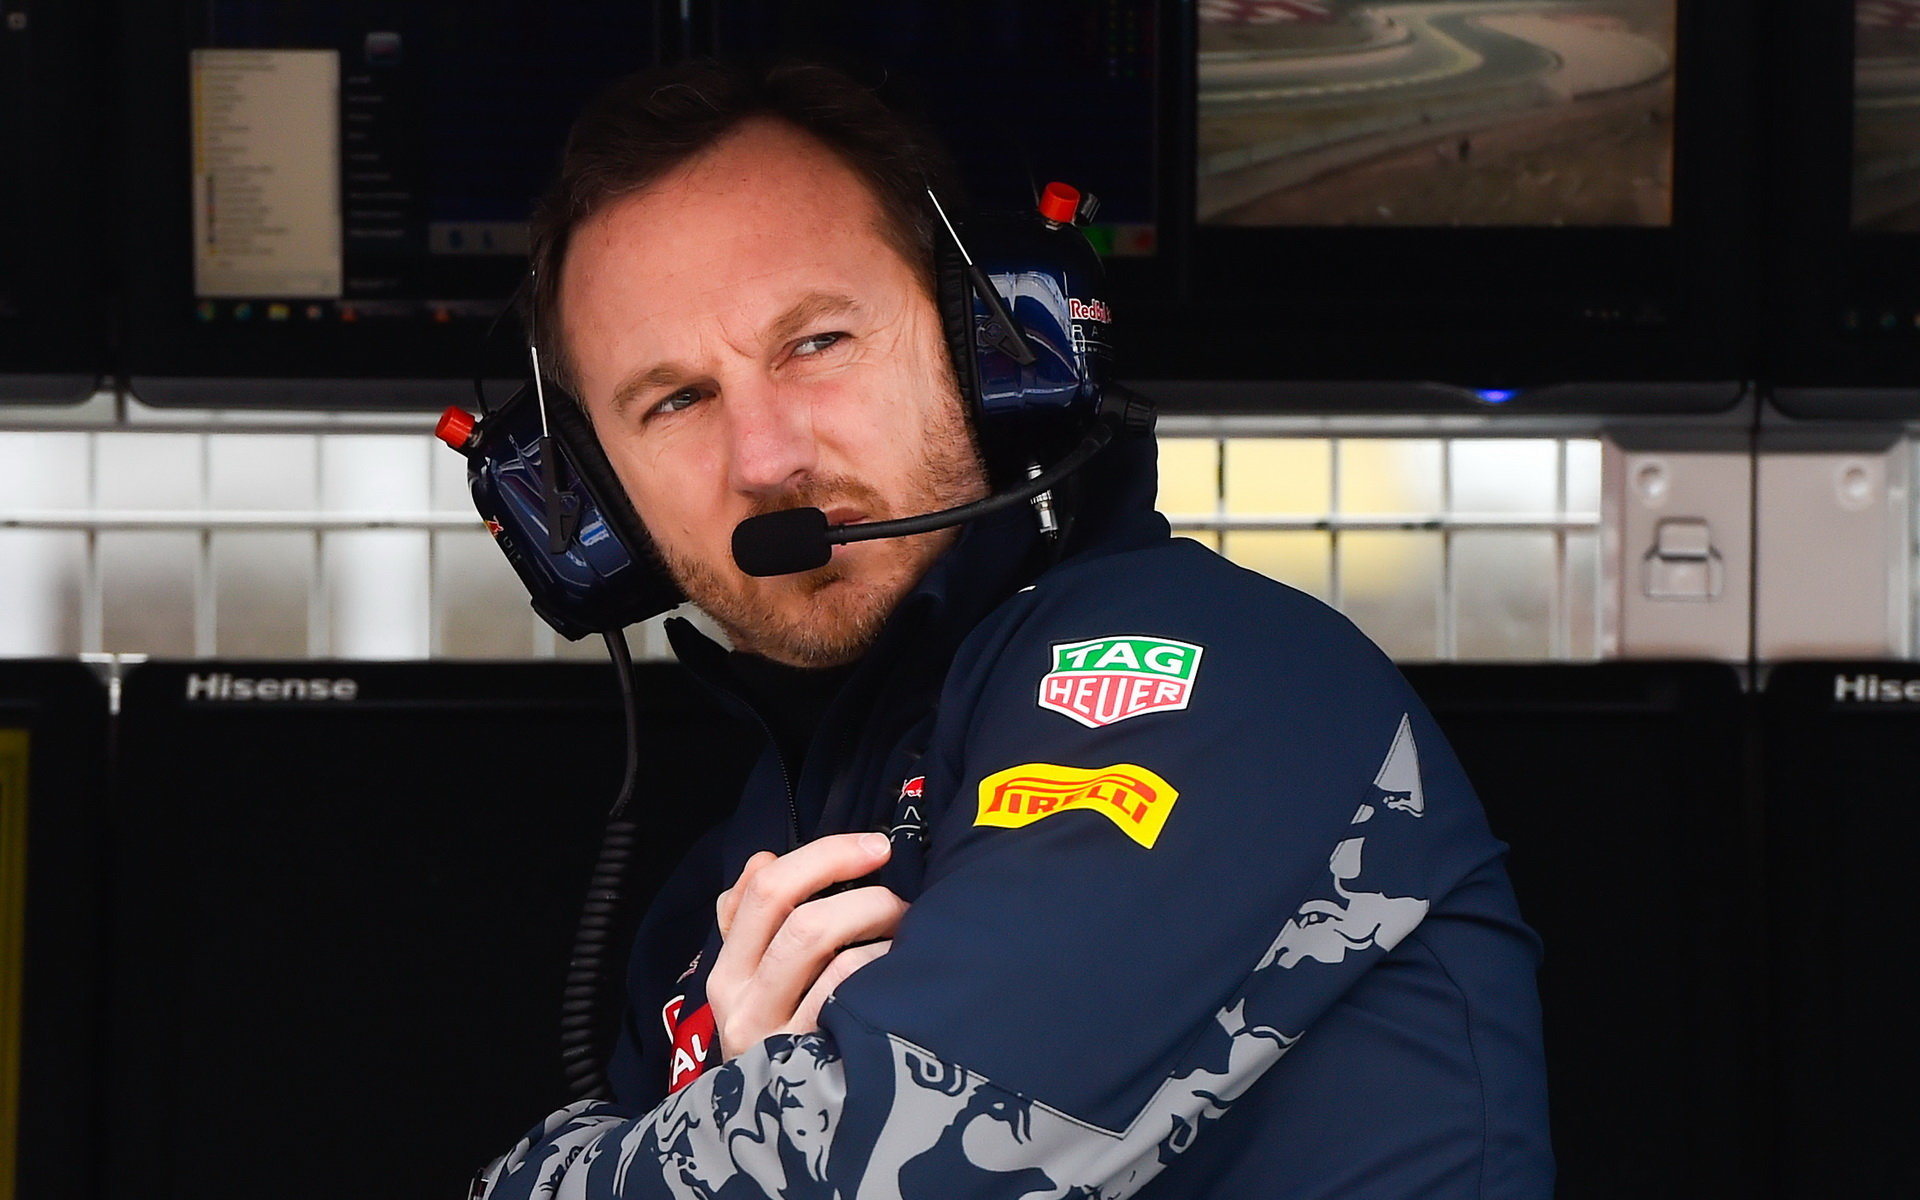 Christian Horner hodnotí úvod sezóny z pohledu Red Bull Racing